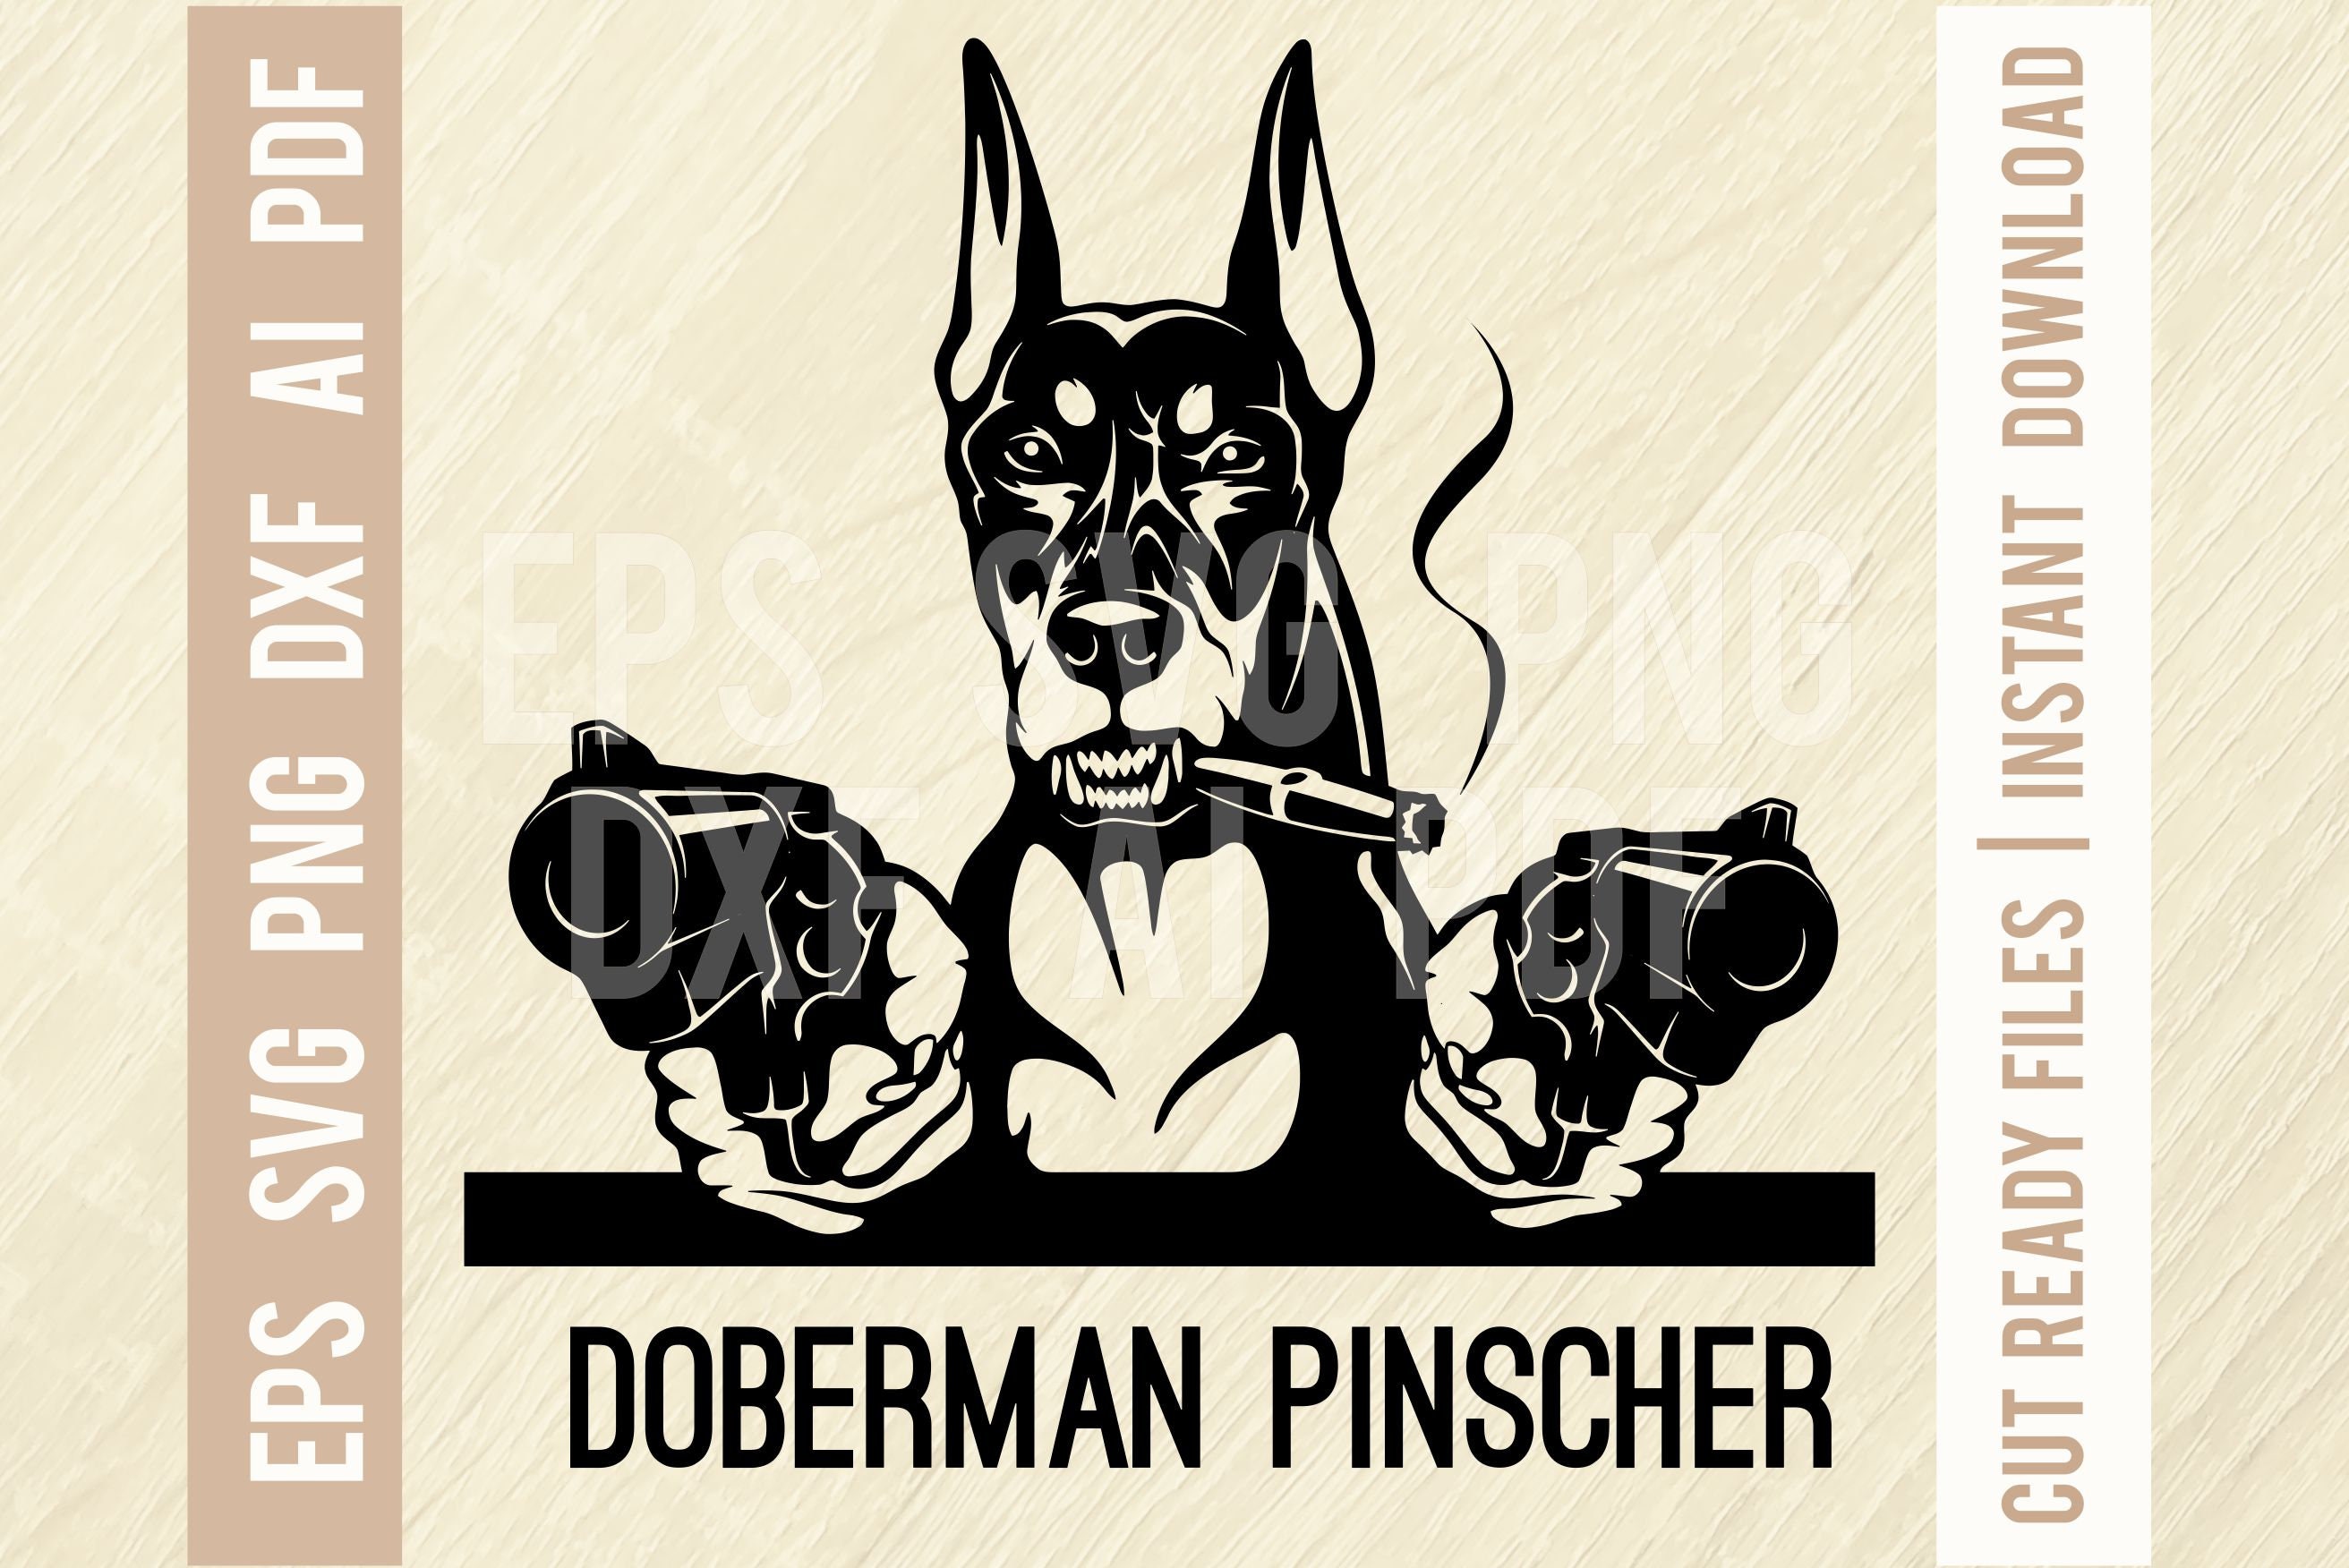 Doberman Pinscher Bad Dog Peeking Dogs Guns SVG Gangster | Etsy